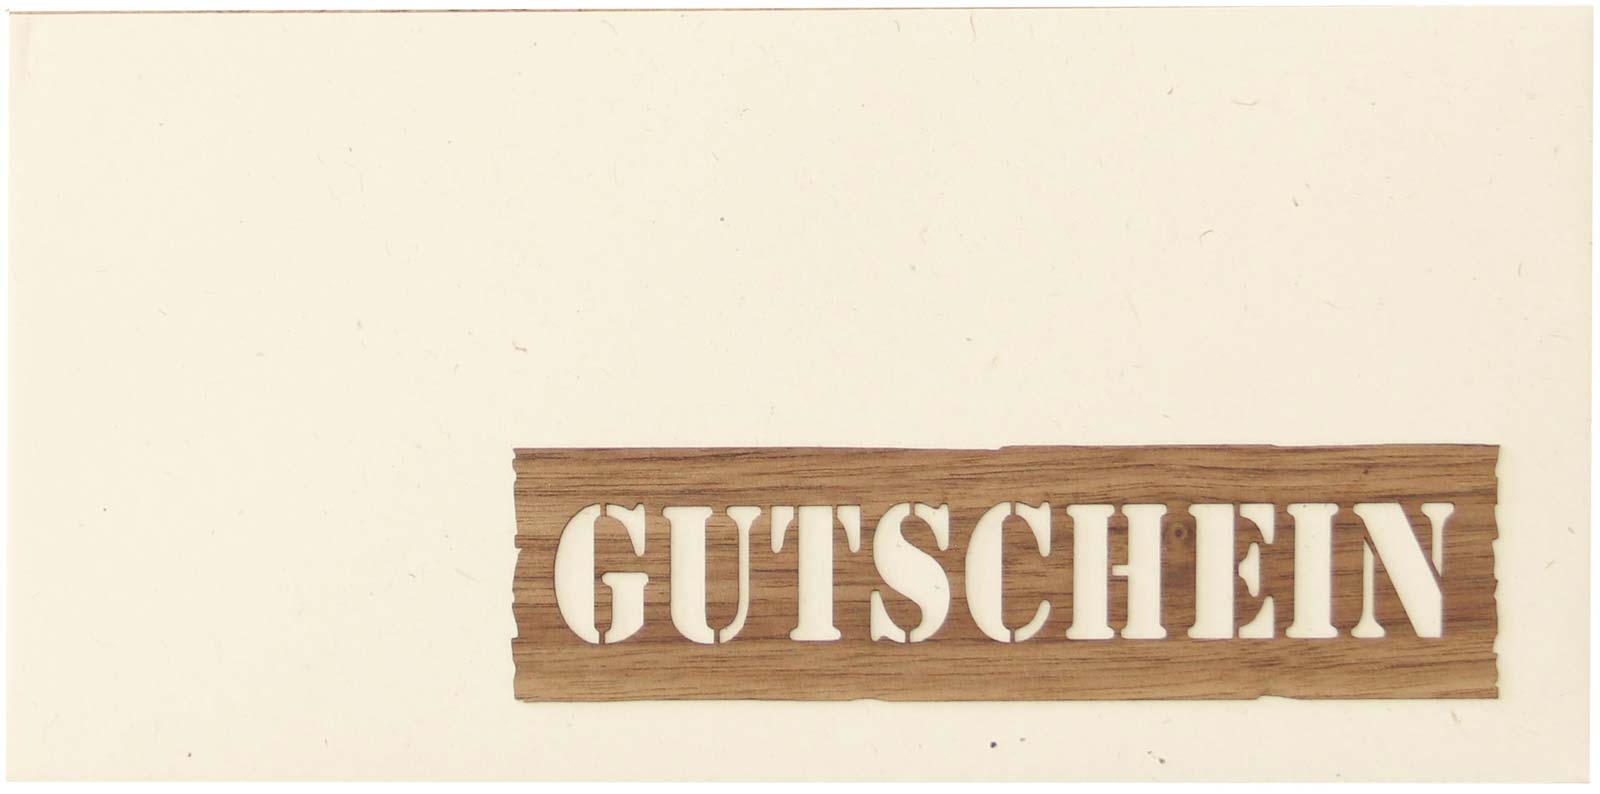 Holzgrusskarten - Gutscheinkuvert "Gutschein"